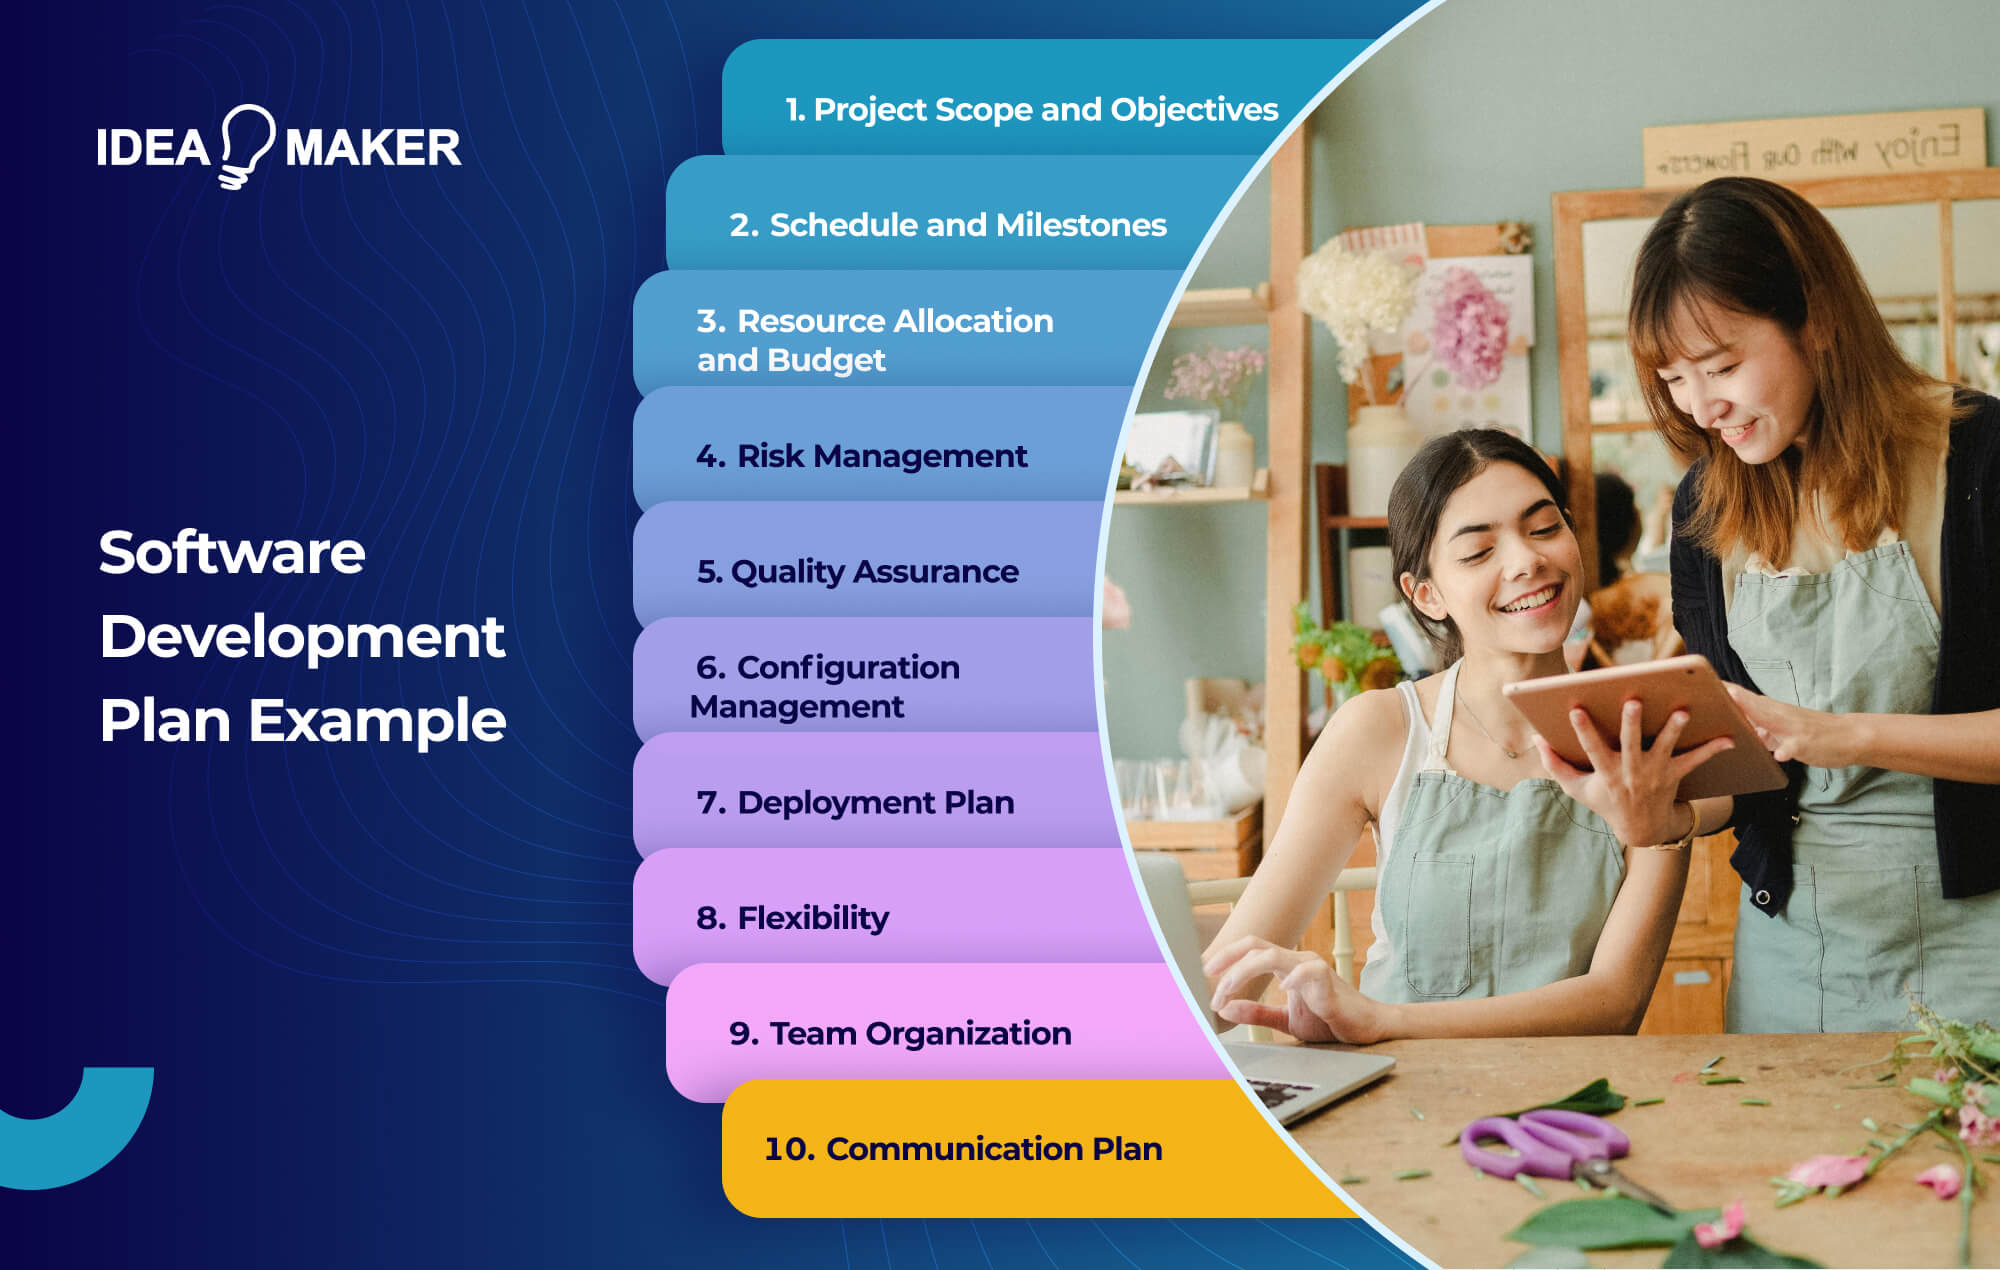 Ideamaker - Software Development Plan Example